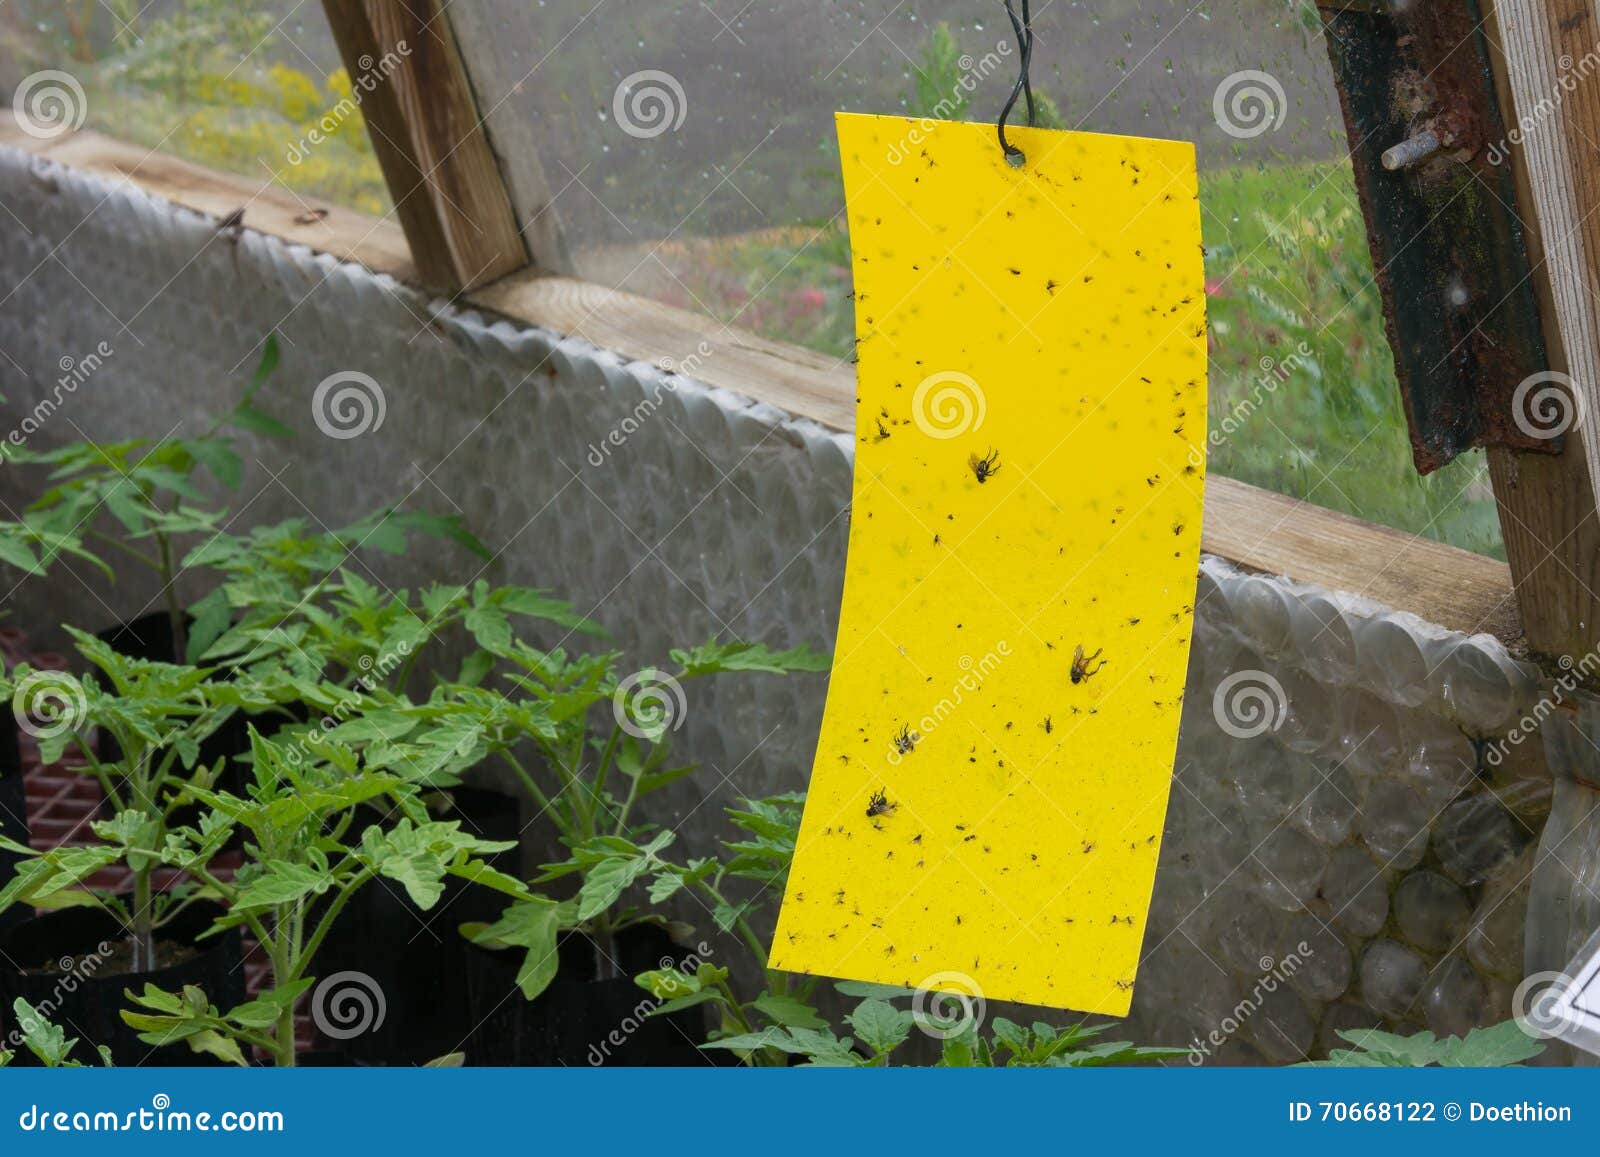 sticky fly trap inside a greenhouse